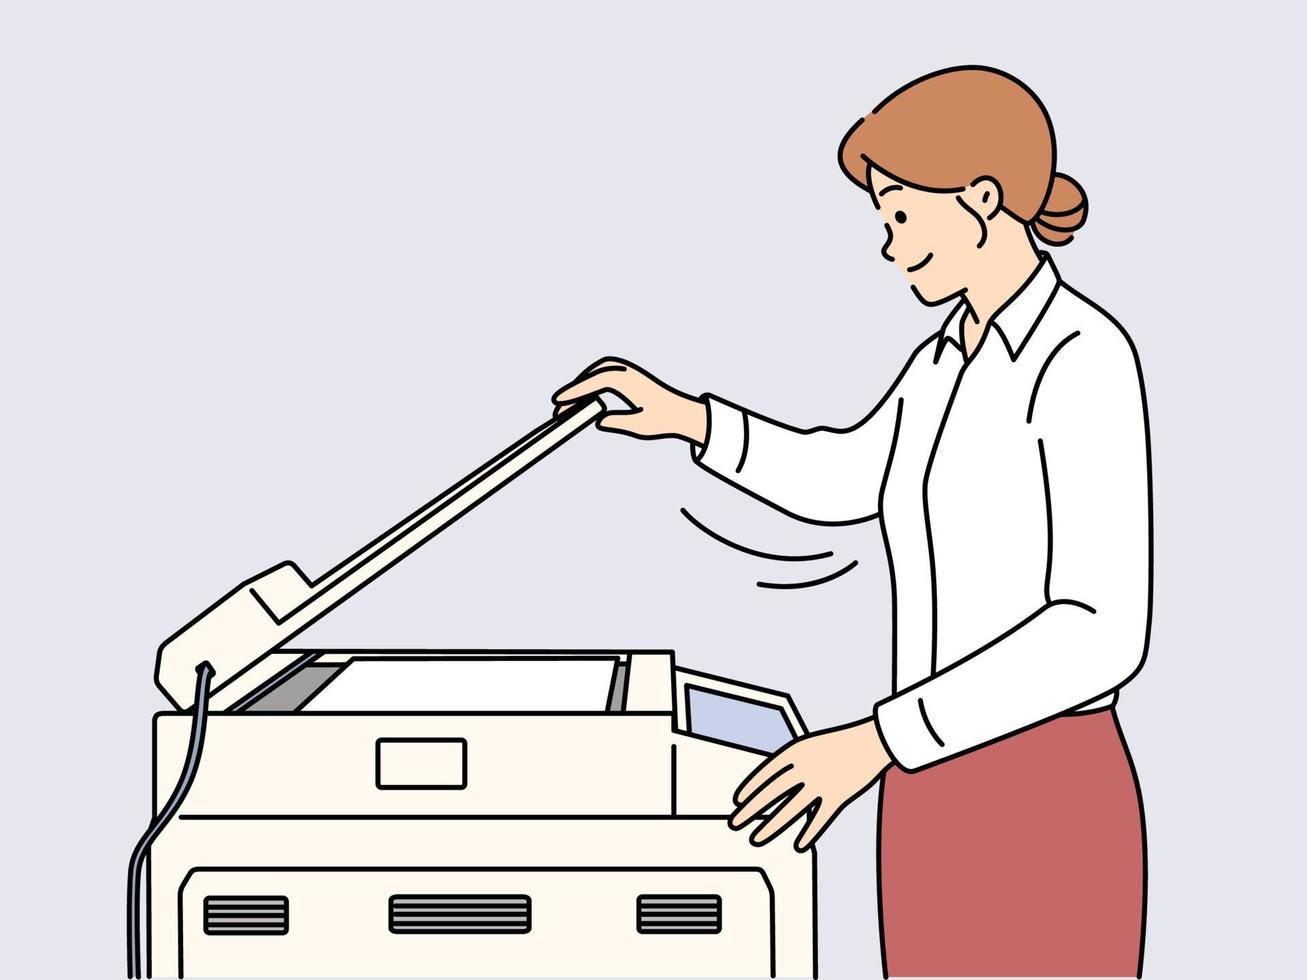 jung Geschäftsfrau Herstellung dokumentieren Kopieren auf Maschine im Büro. lächelnd weiblich Mitarbeiter Arbeiten auf Drucker oder Fotokopie Gerät. Vektor Illustration.